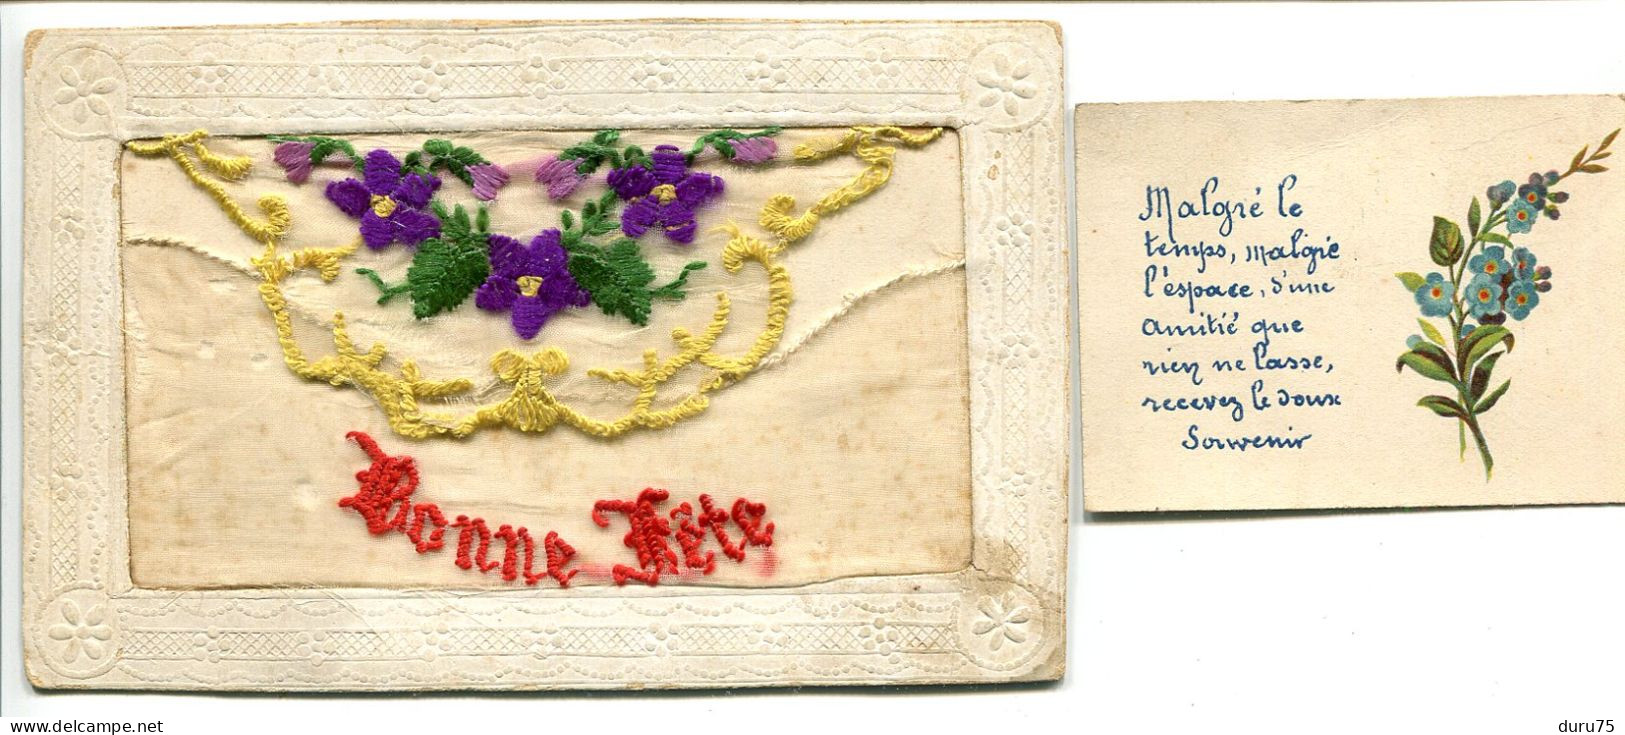 CPA Brodée Ecrite 1919 * BONNE FÊTE Fleurs Violettes Faisant Pochette Avec Petite Carte * En L'état Déchirures / Accrocs - Brodées